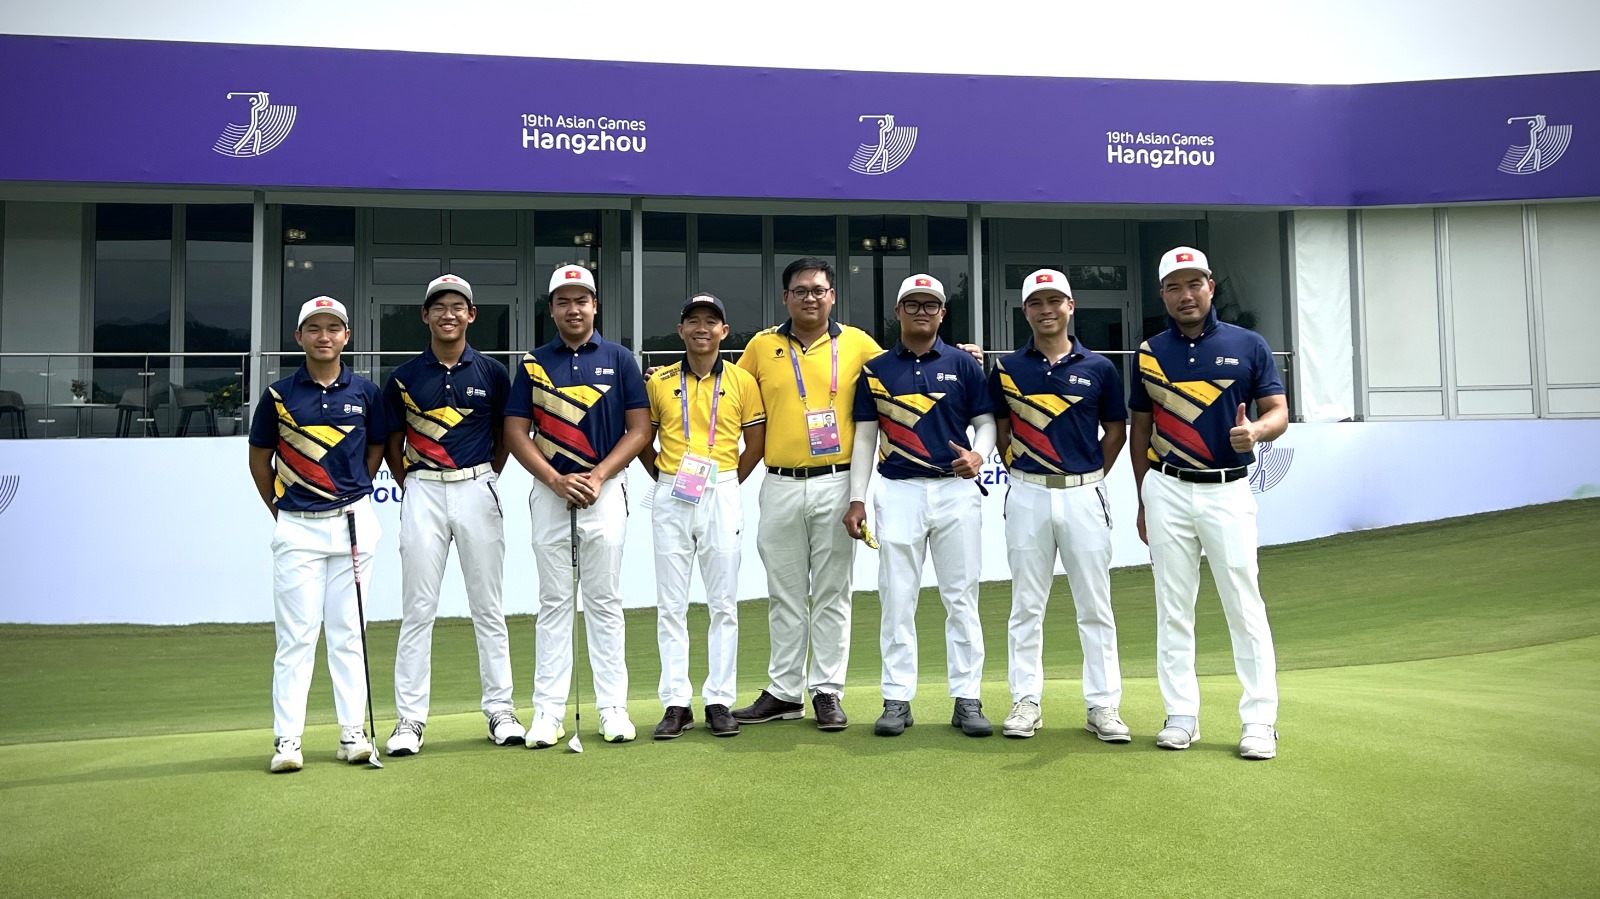 钻石赞助——BCR助力越南高尔夫国家队迈向国际舞台